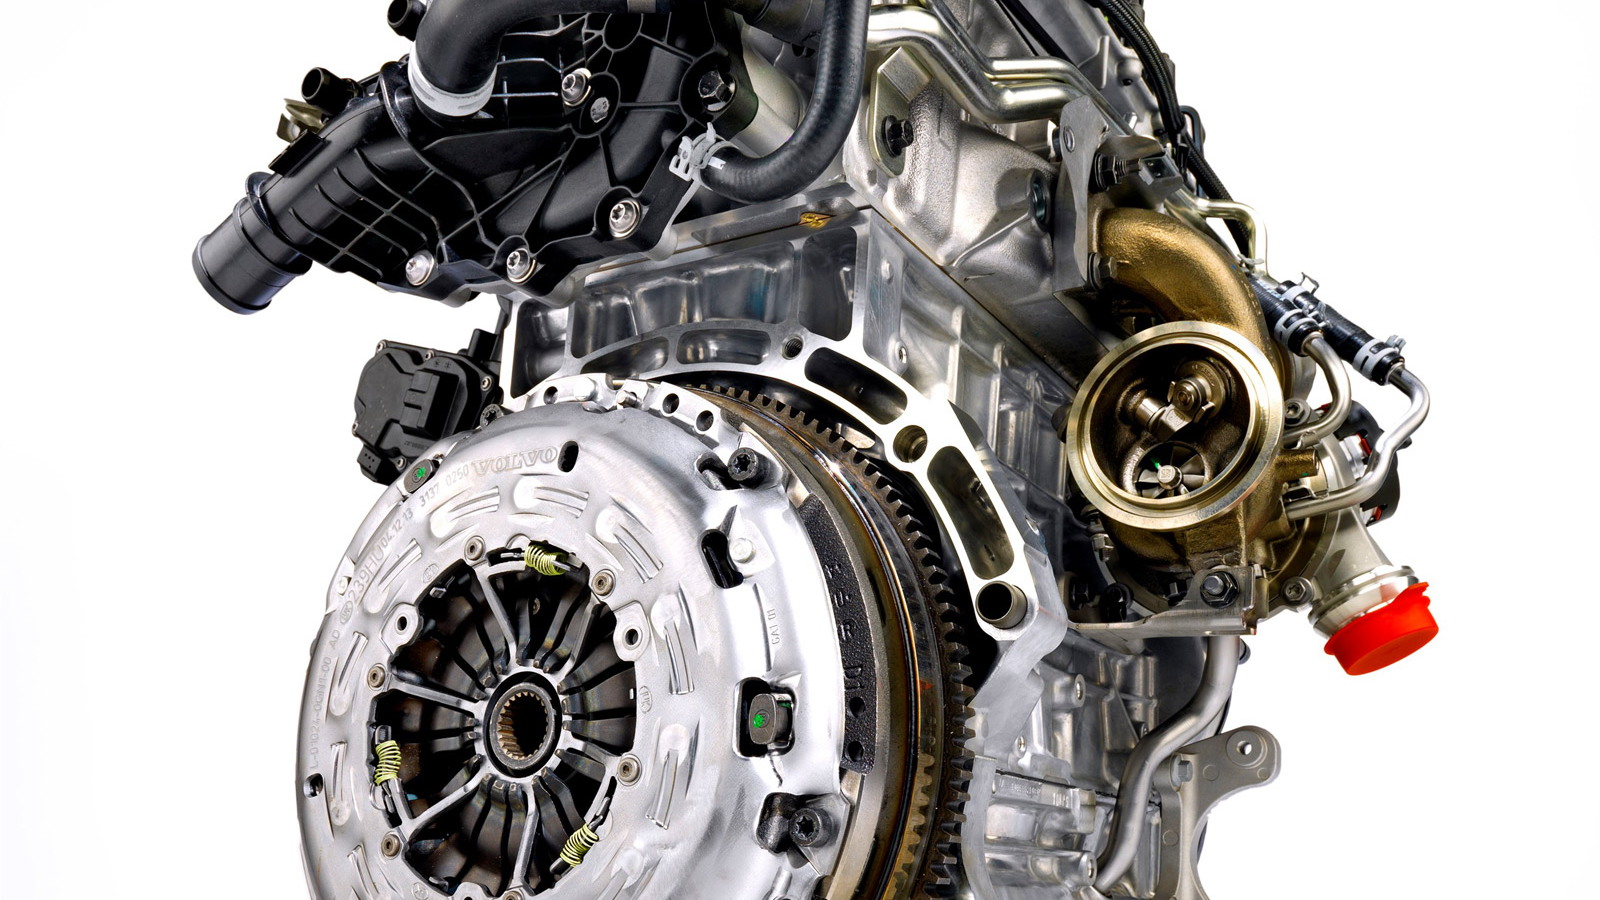 Volvo three-cylinder engine